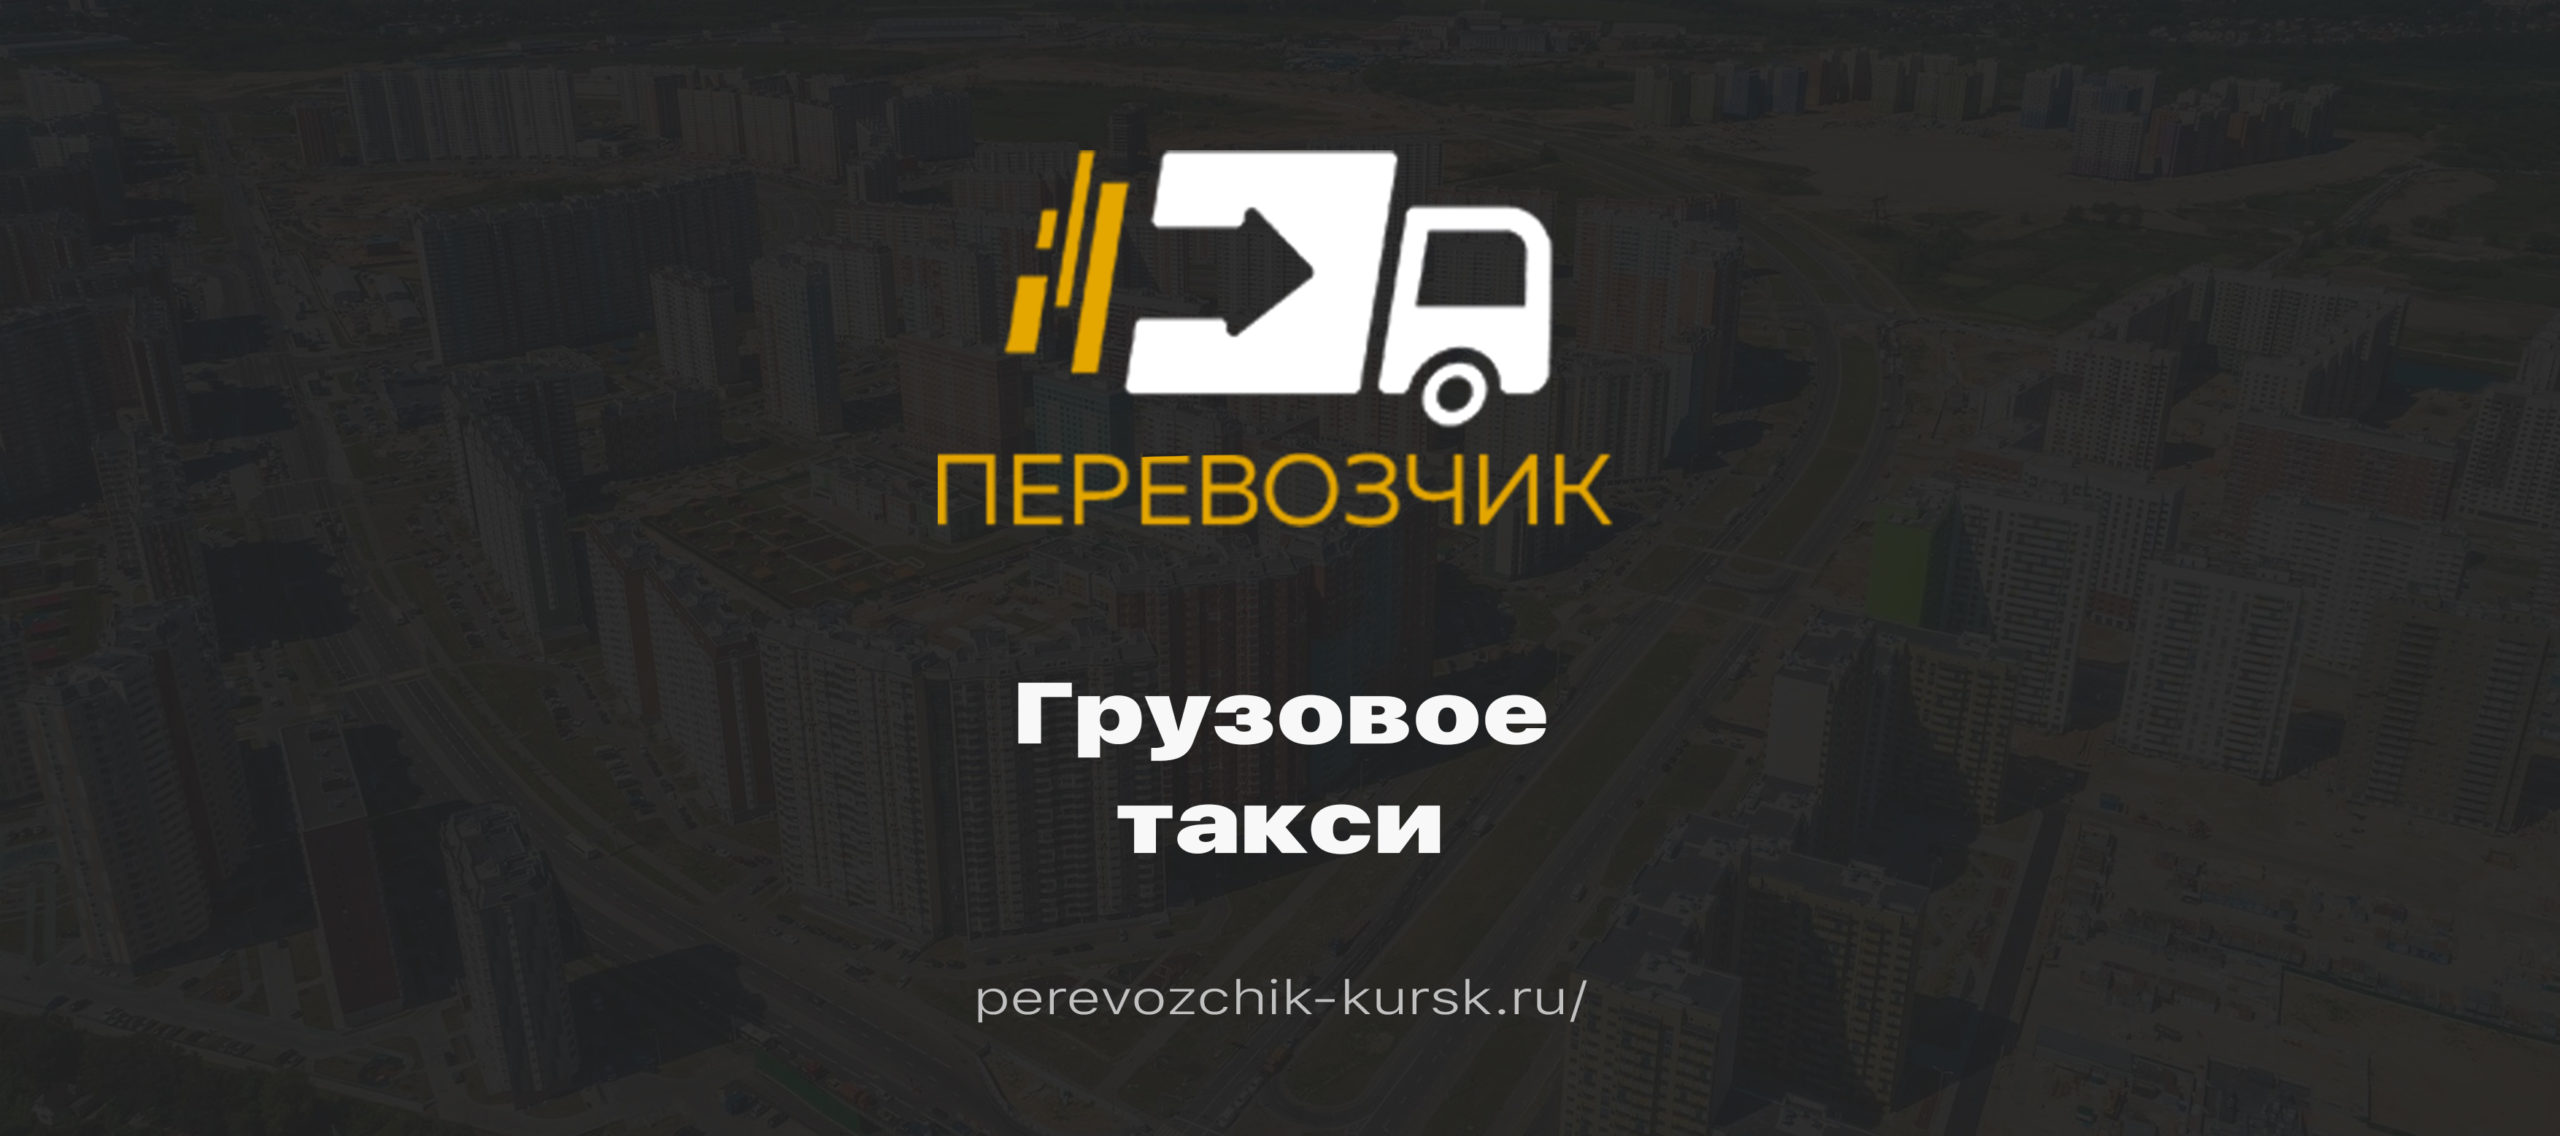 Телефон курского такси. Такси Курск дешевое. Такси Курчатов. Такси Курск телефон.